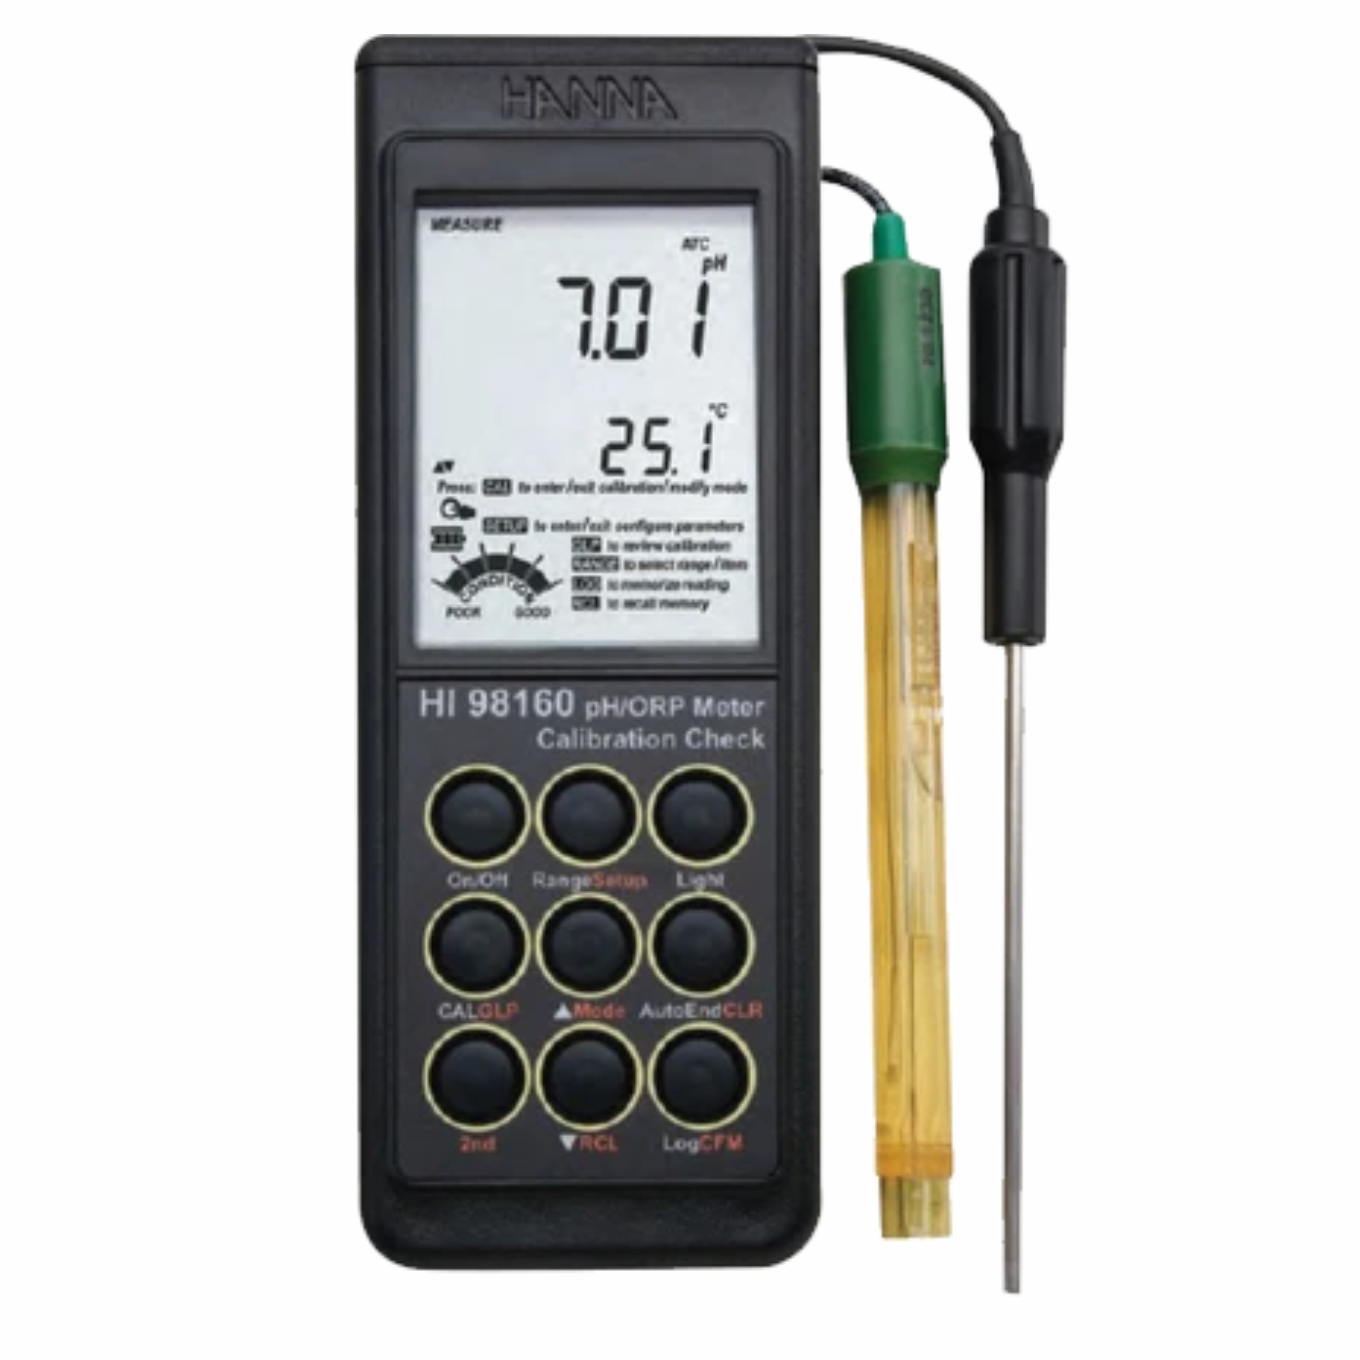 pHmetro portátil PH/ORP/TEMP a prueba de agua, calibración automática HI98160 HANNA